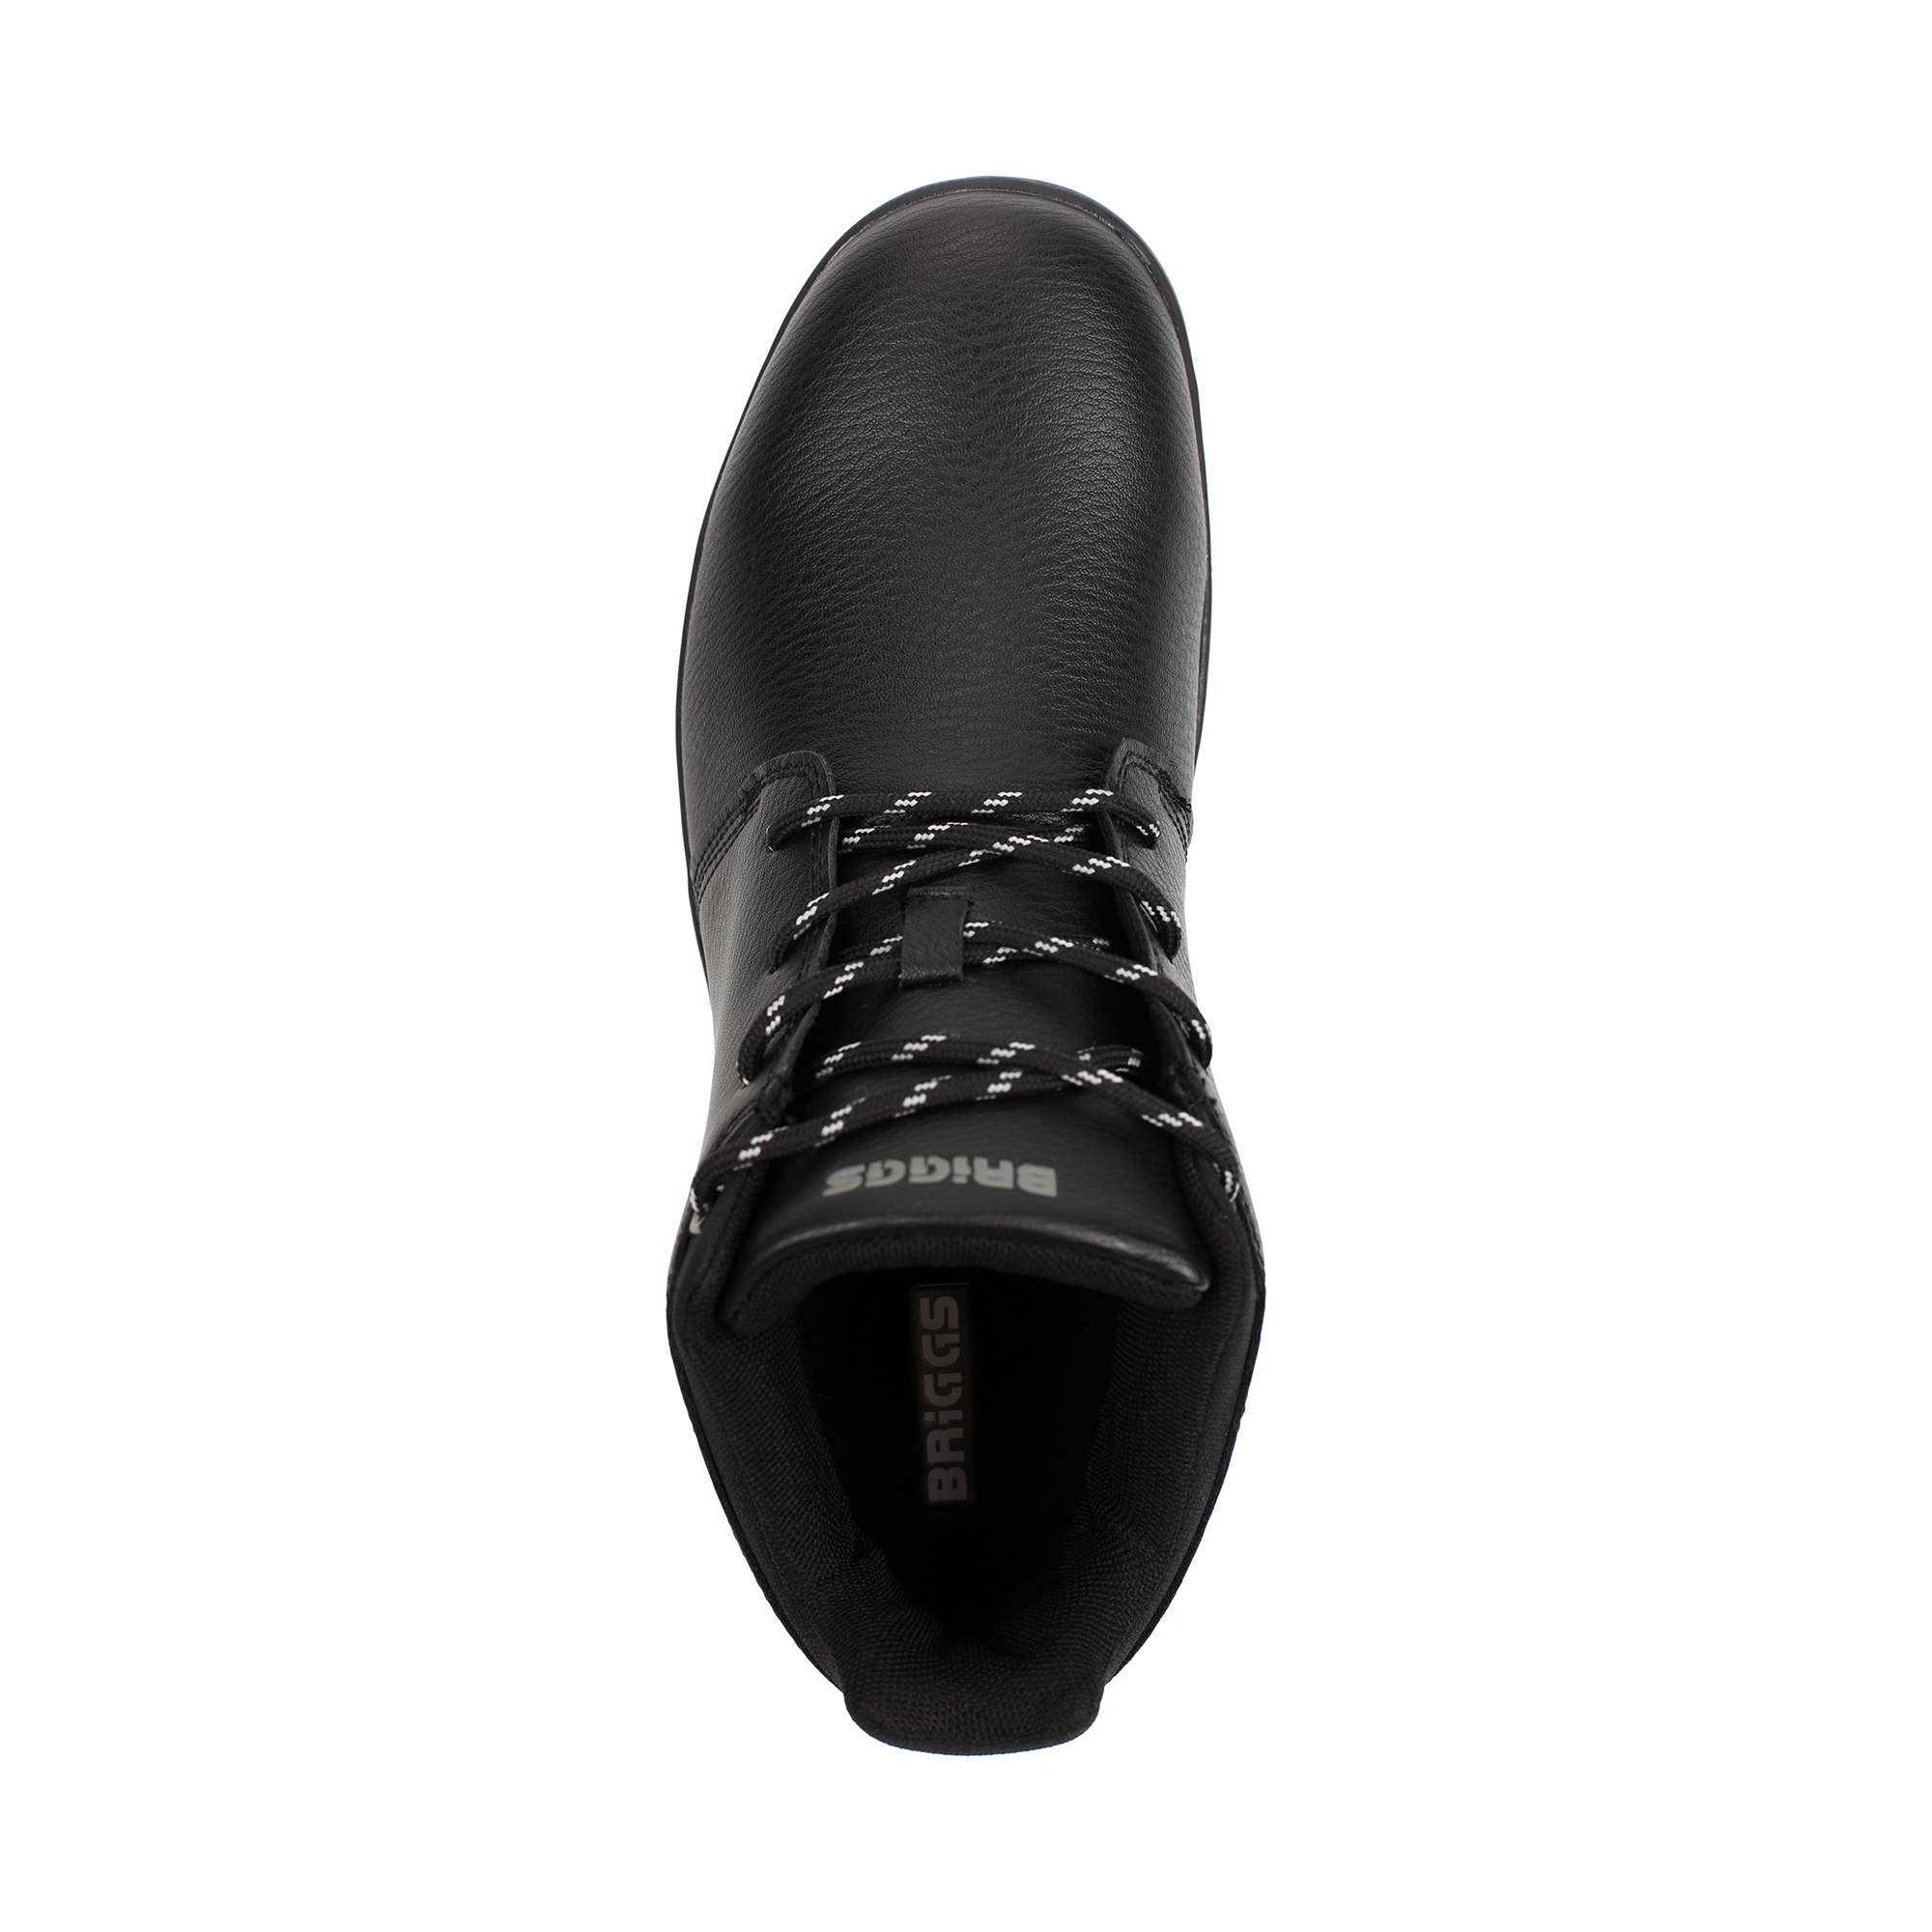 Ботинки BRIGGS 064-110A-2602, цвет черный, размер 42 - фото 5